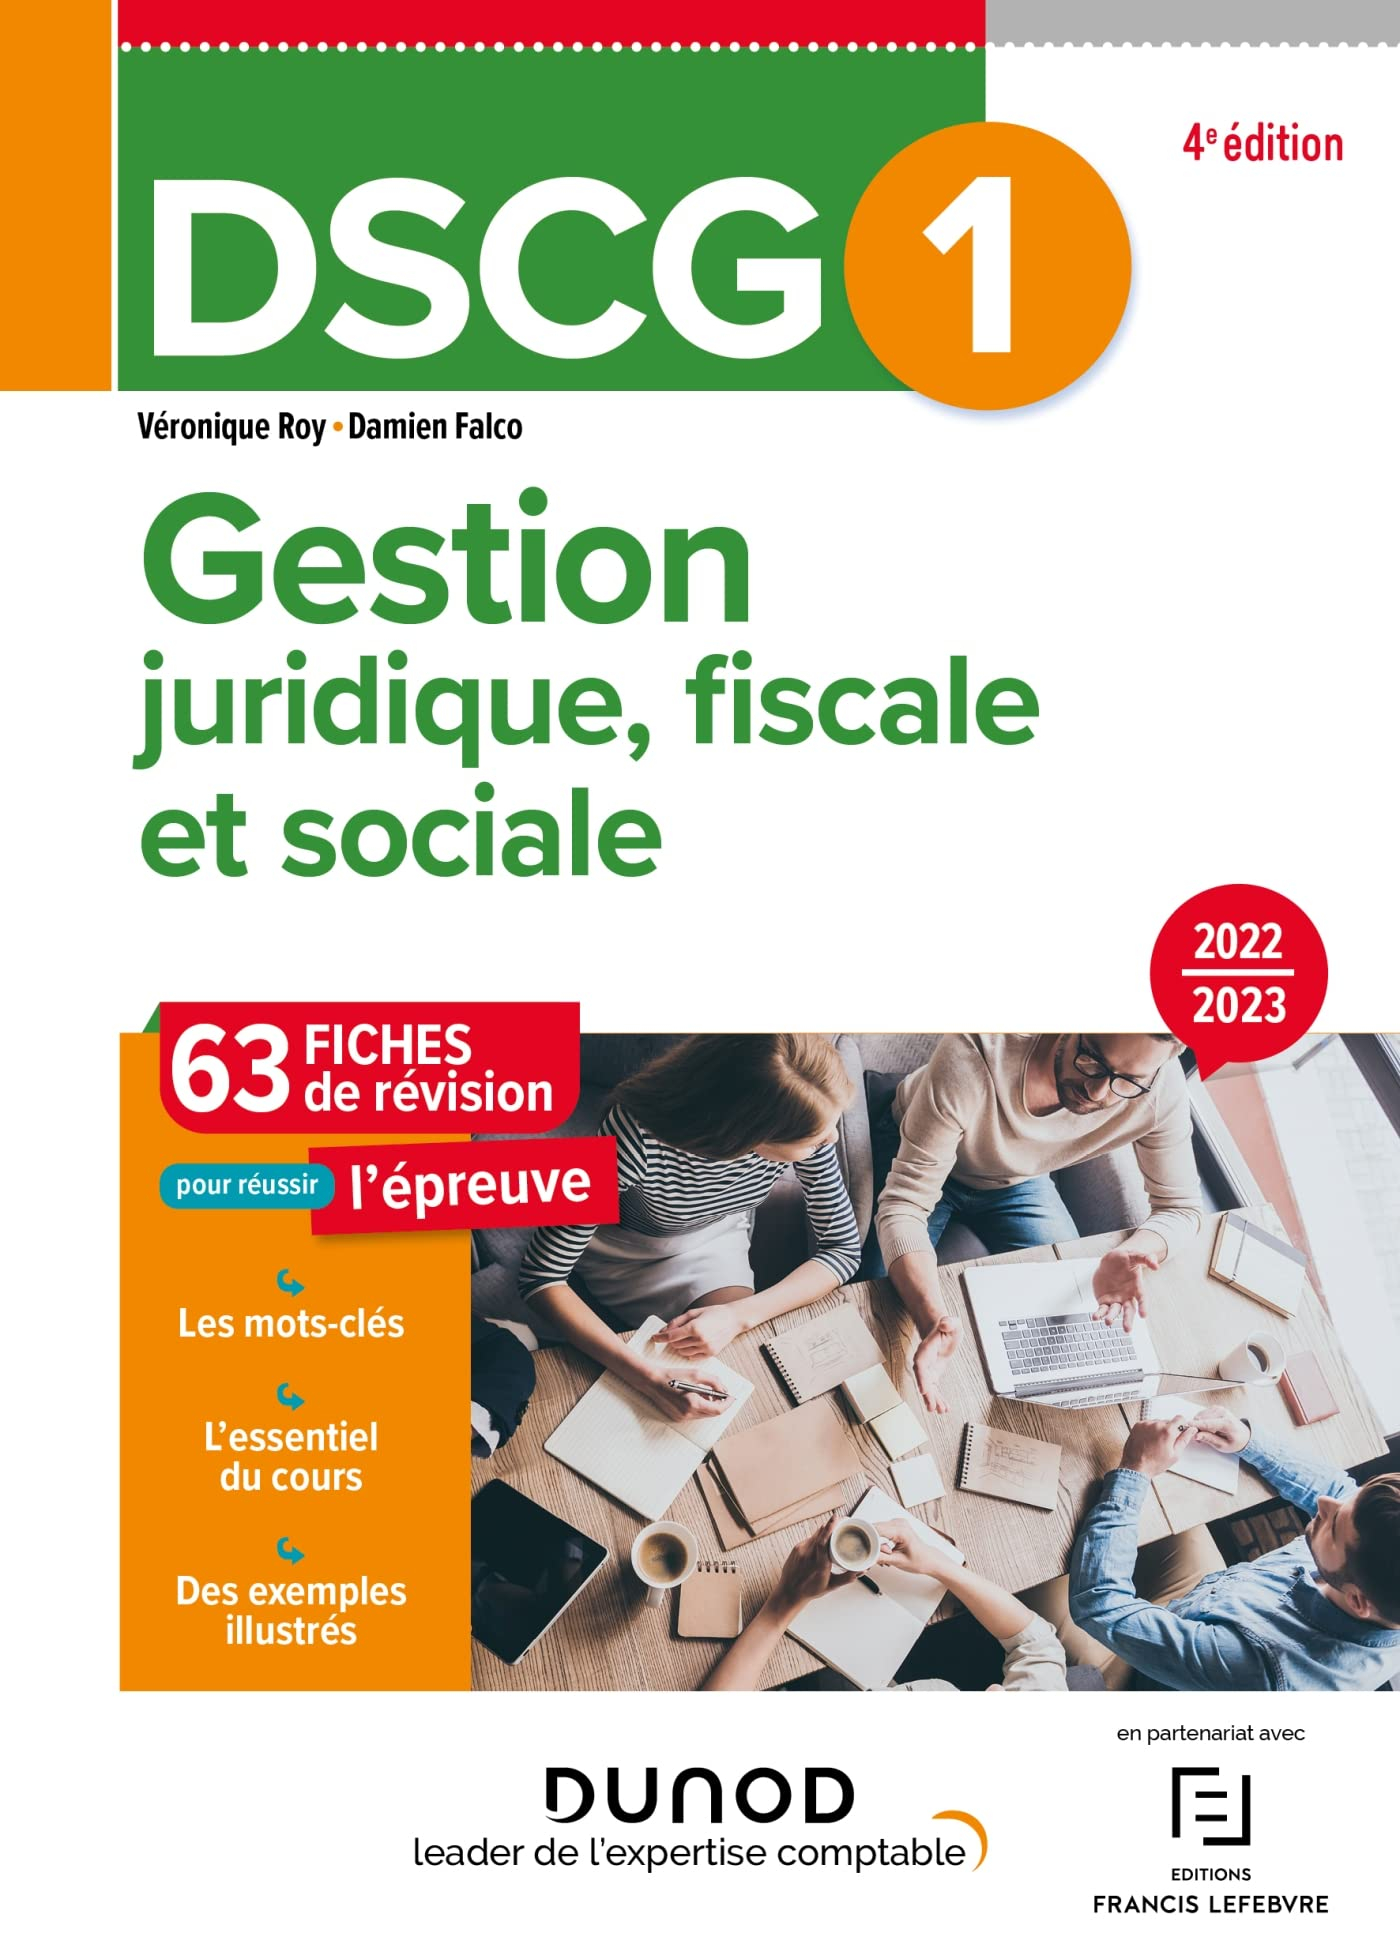 DSCG 1, gestion juridique, fiscale et sociale : 63 fiches de révision pour réussir l'épreuve : 2022-